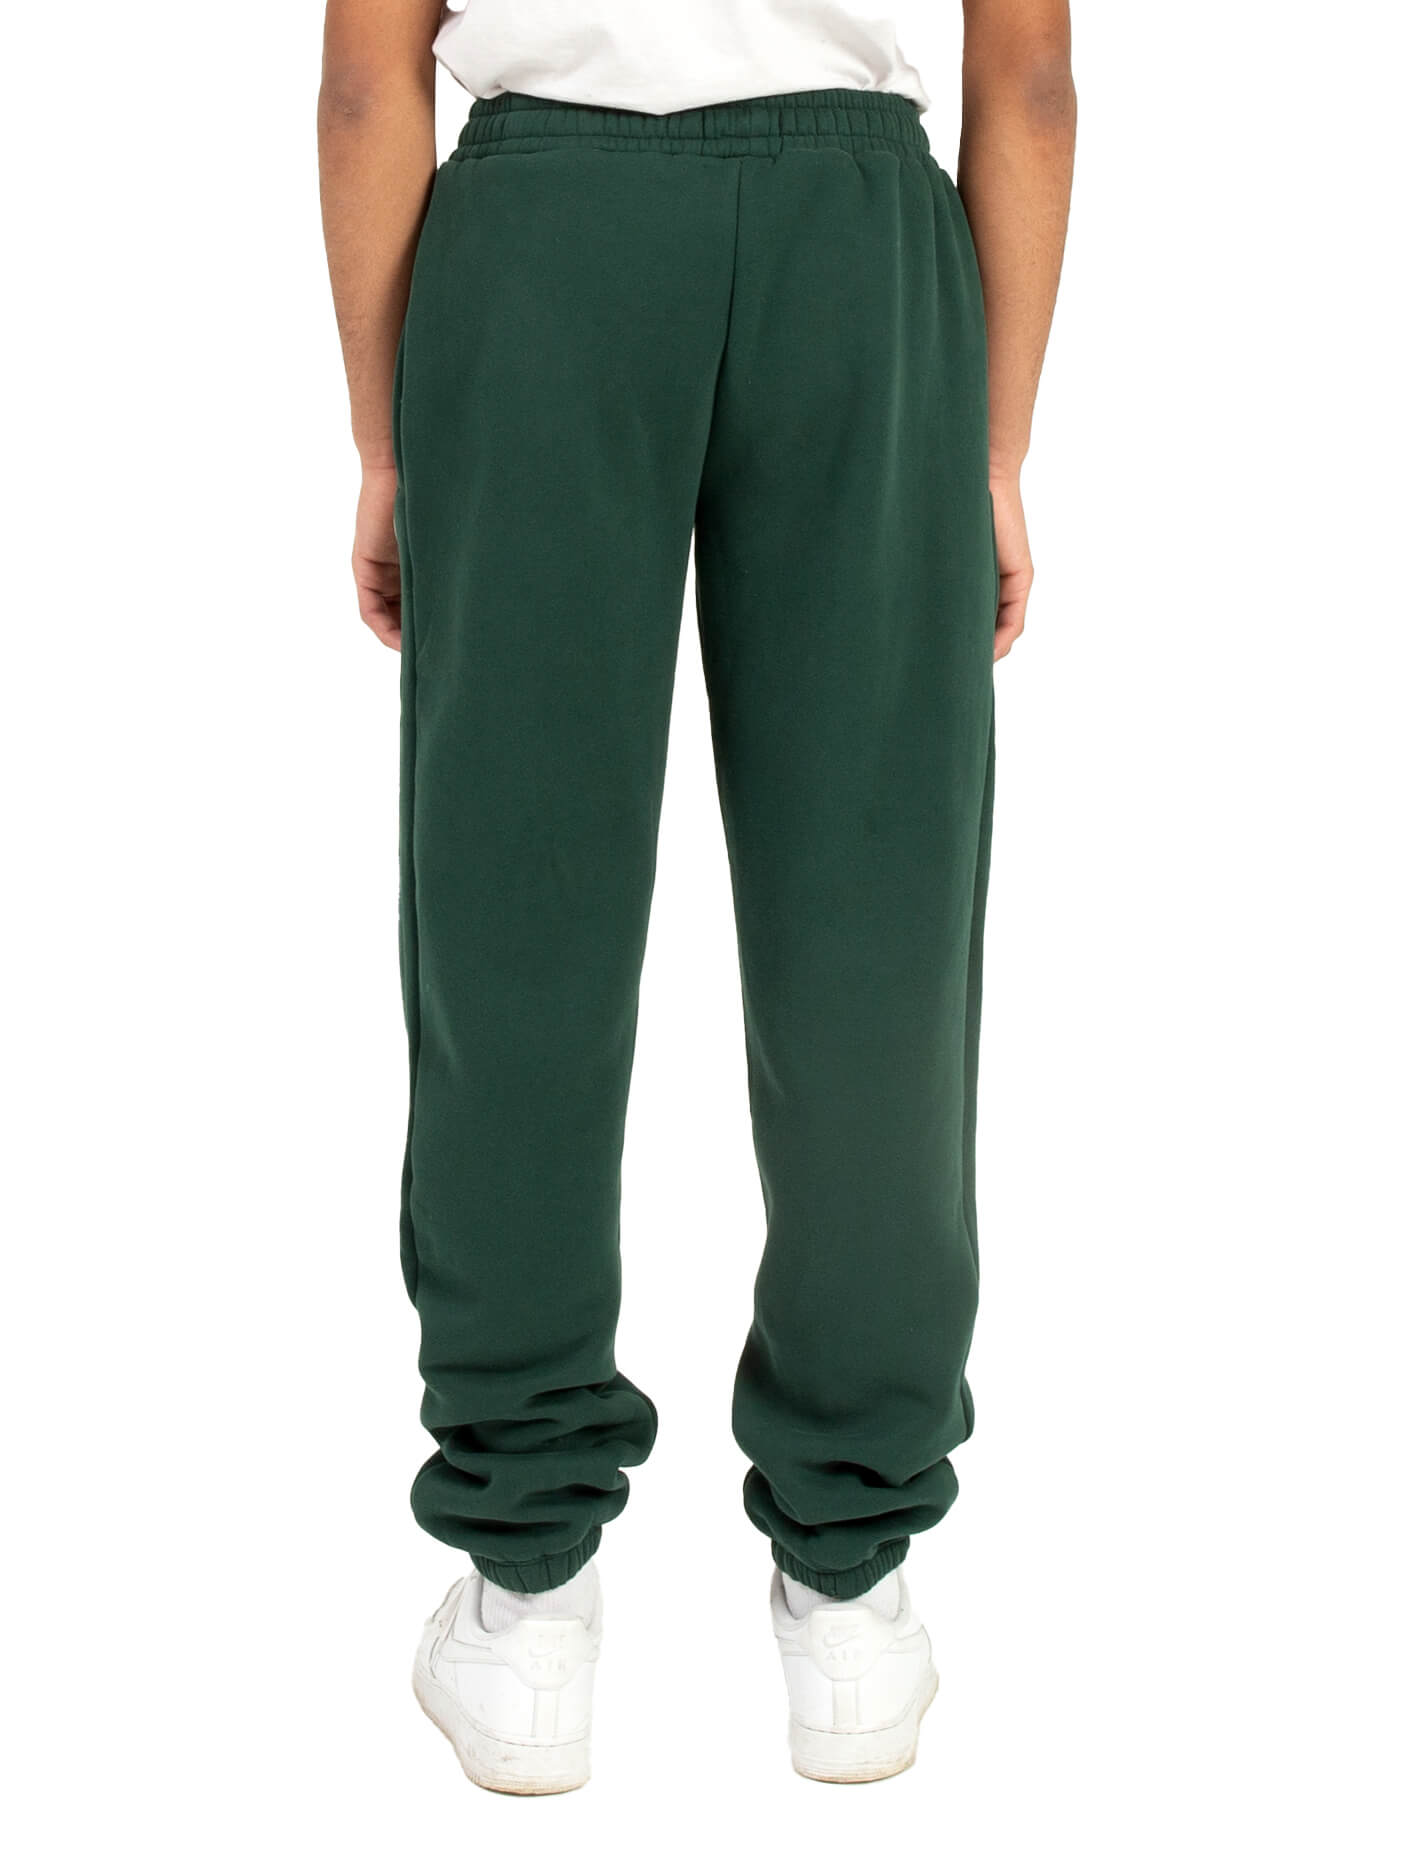 Kaylo - Pantalon de molleton vert forêt